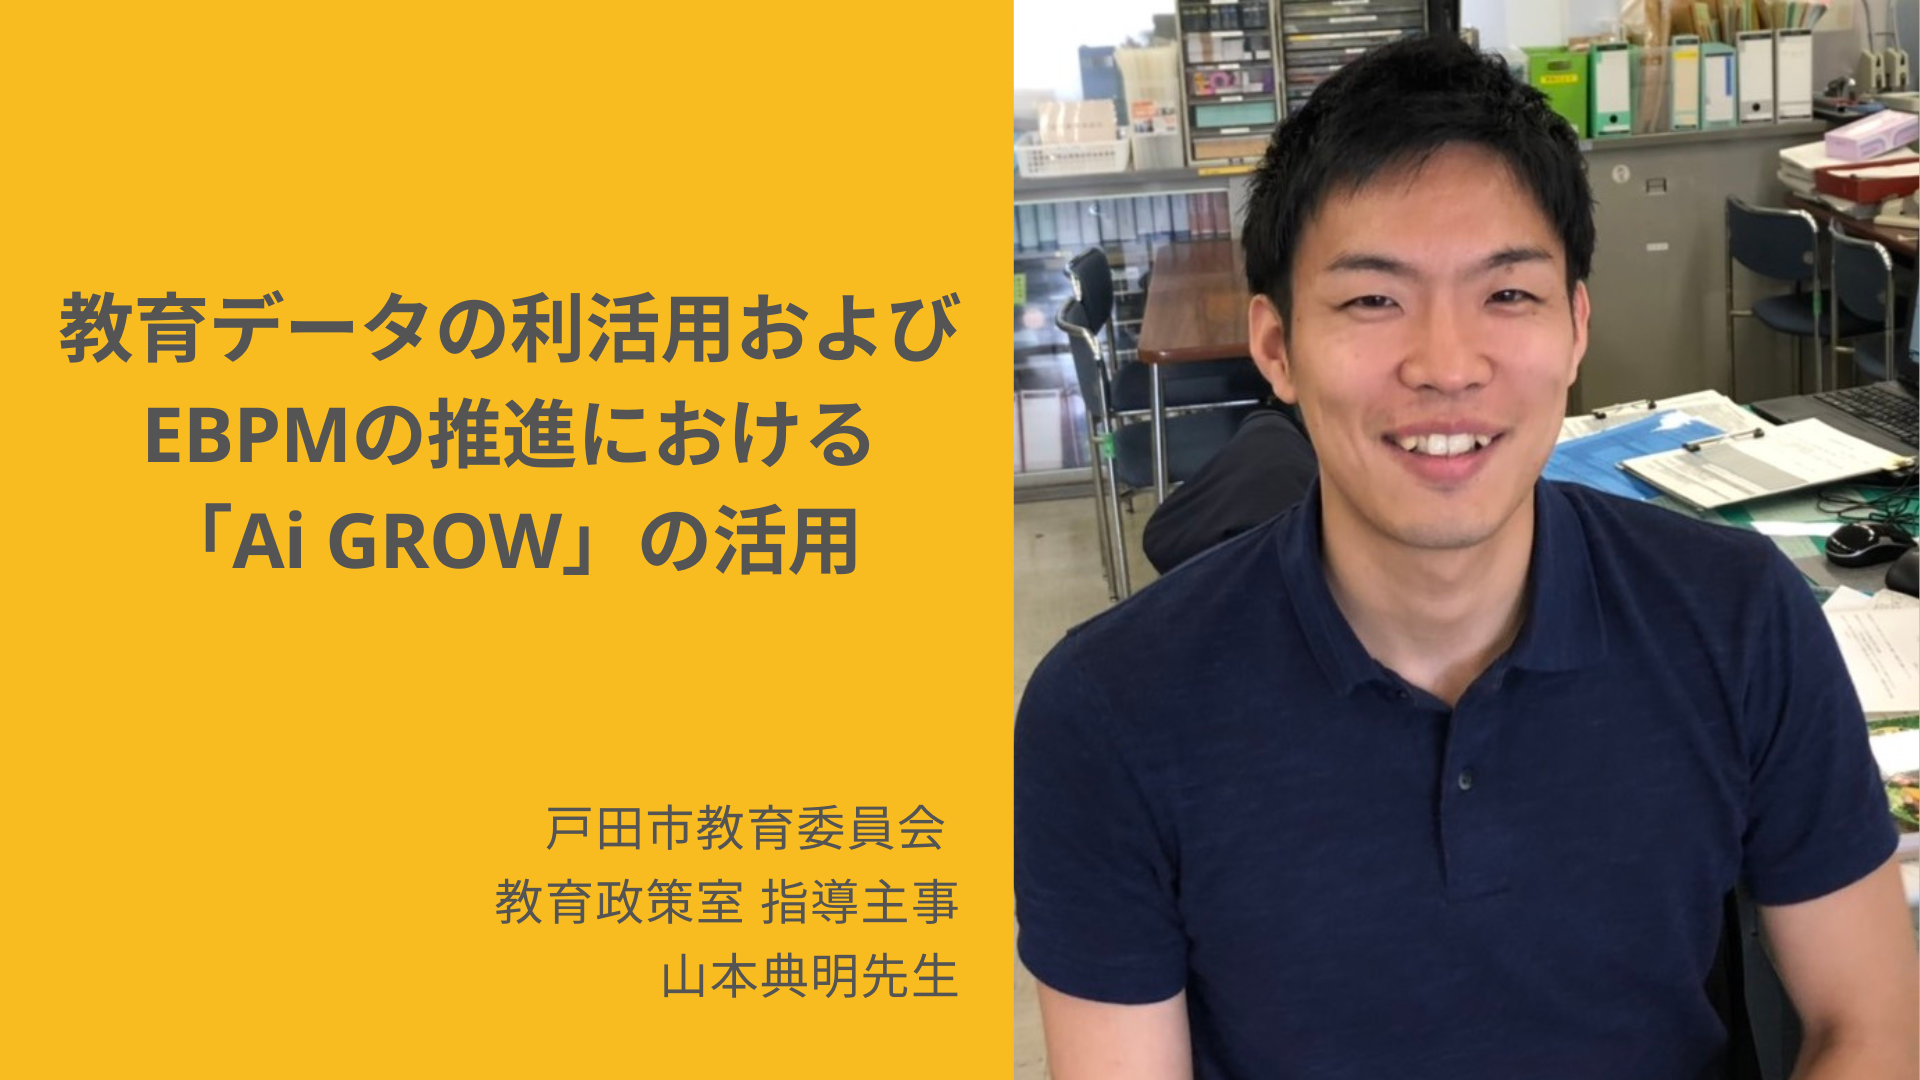 【活用事例】戸田市教育委員会：教育データの利活用およびEBPMの推進における「Ai GROW」の活用